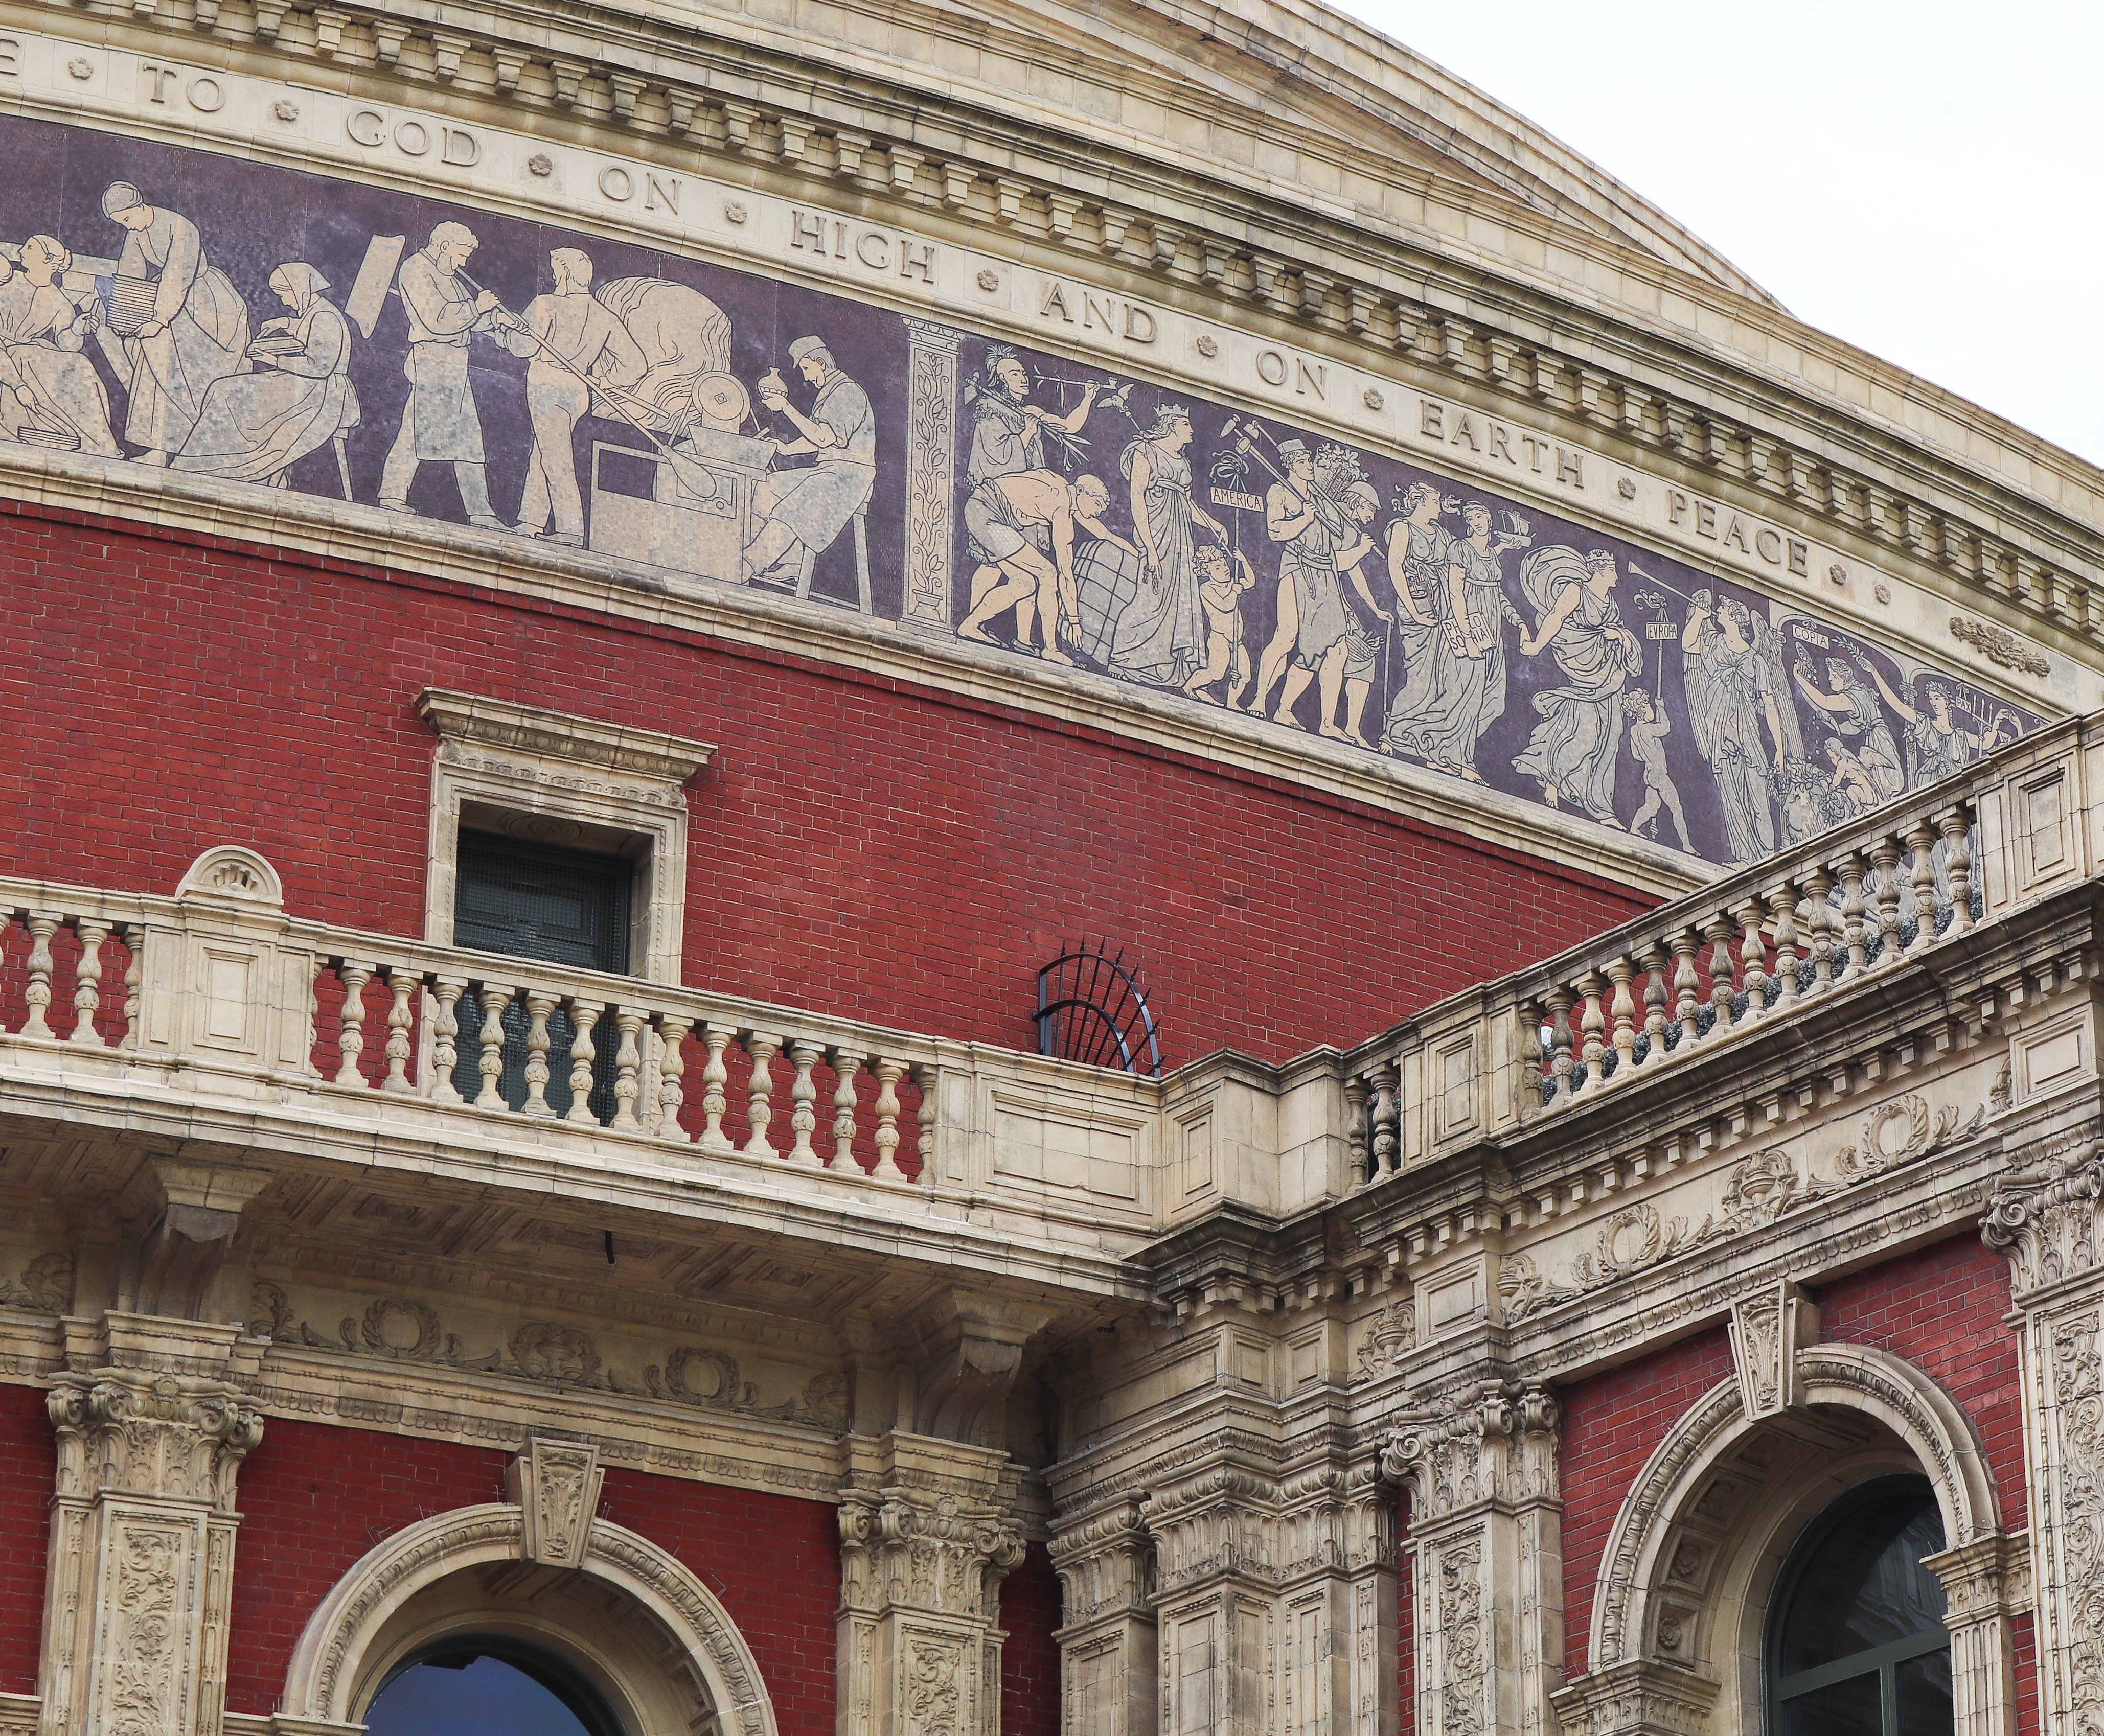 Closer view of exteriors at Royal Albert Hall